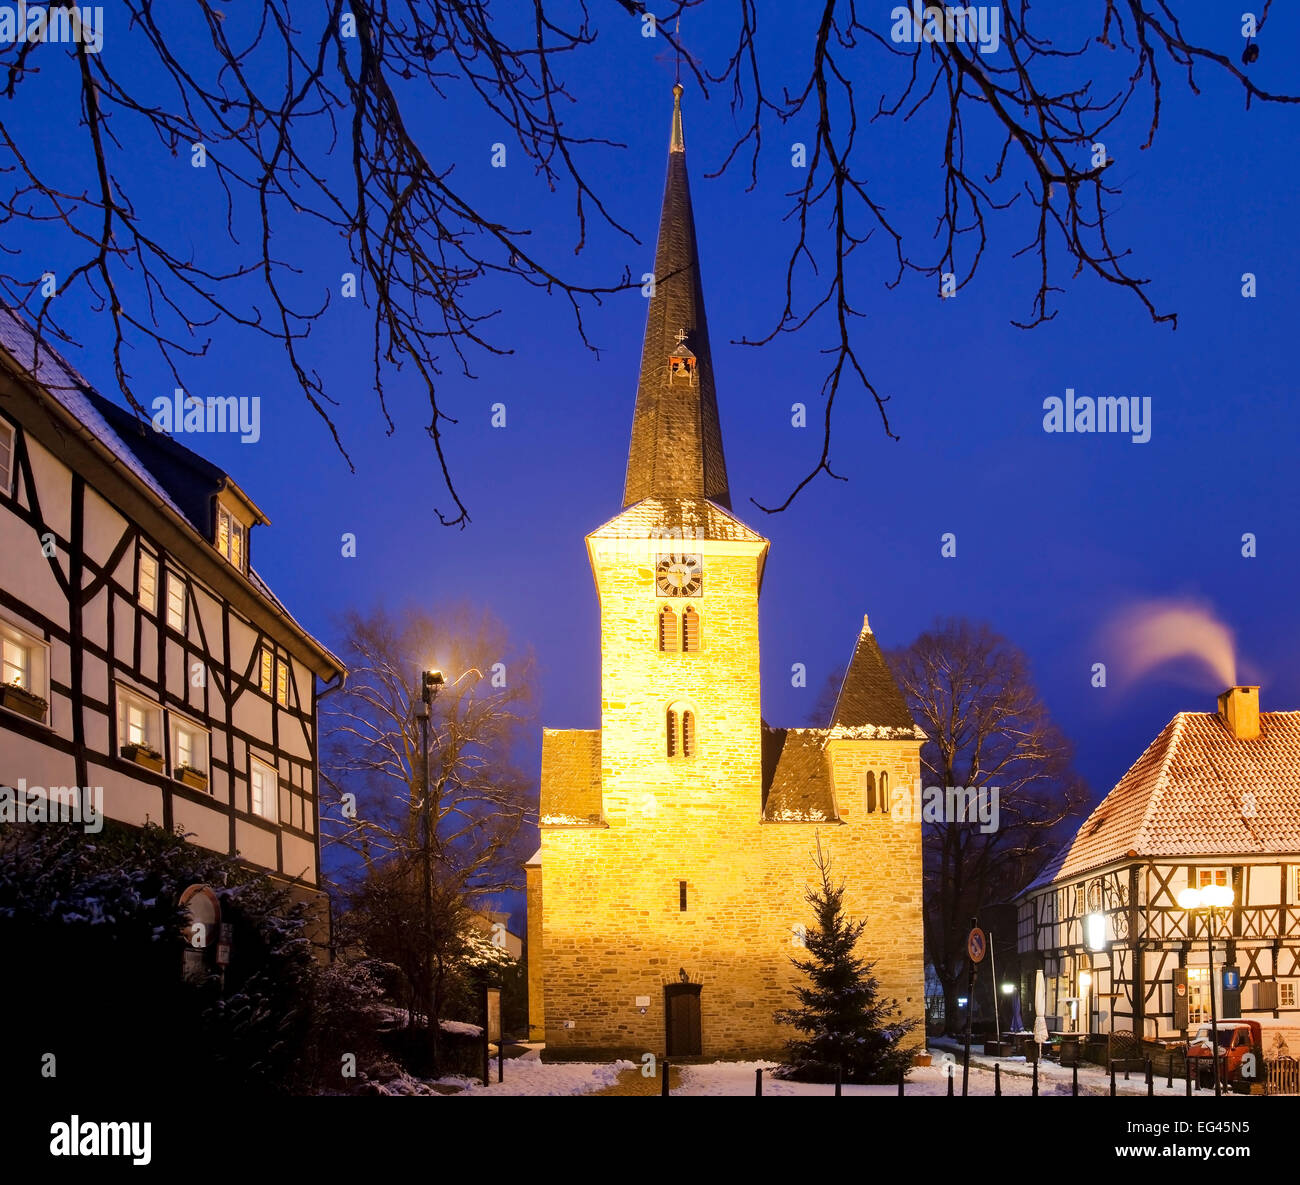 Die Dorfkirche im historischen Dorfzentrum von Wengern, Stadt Wetter, Ruhr, Nordrhein-Westfalen, Deutschland, Europa Banque D'Images